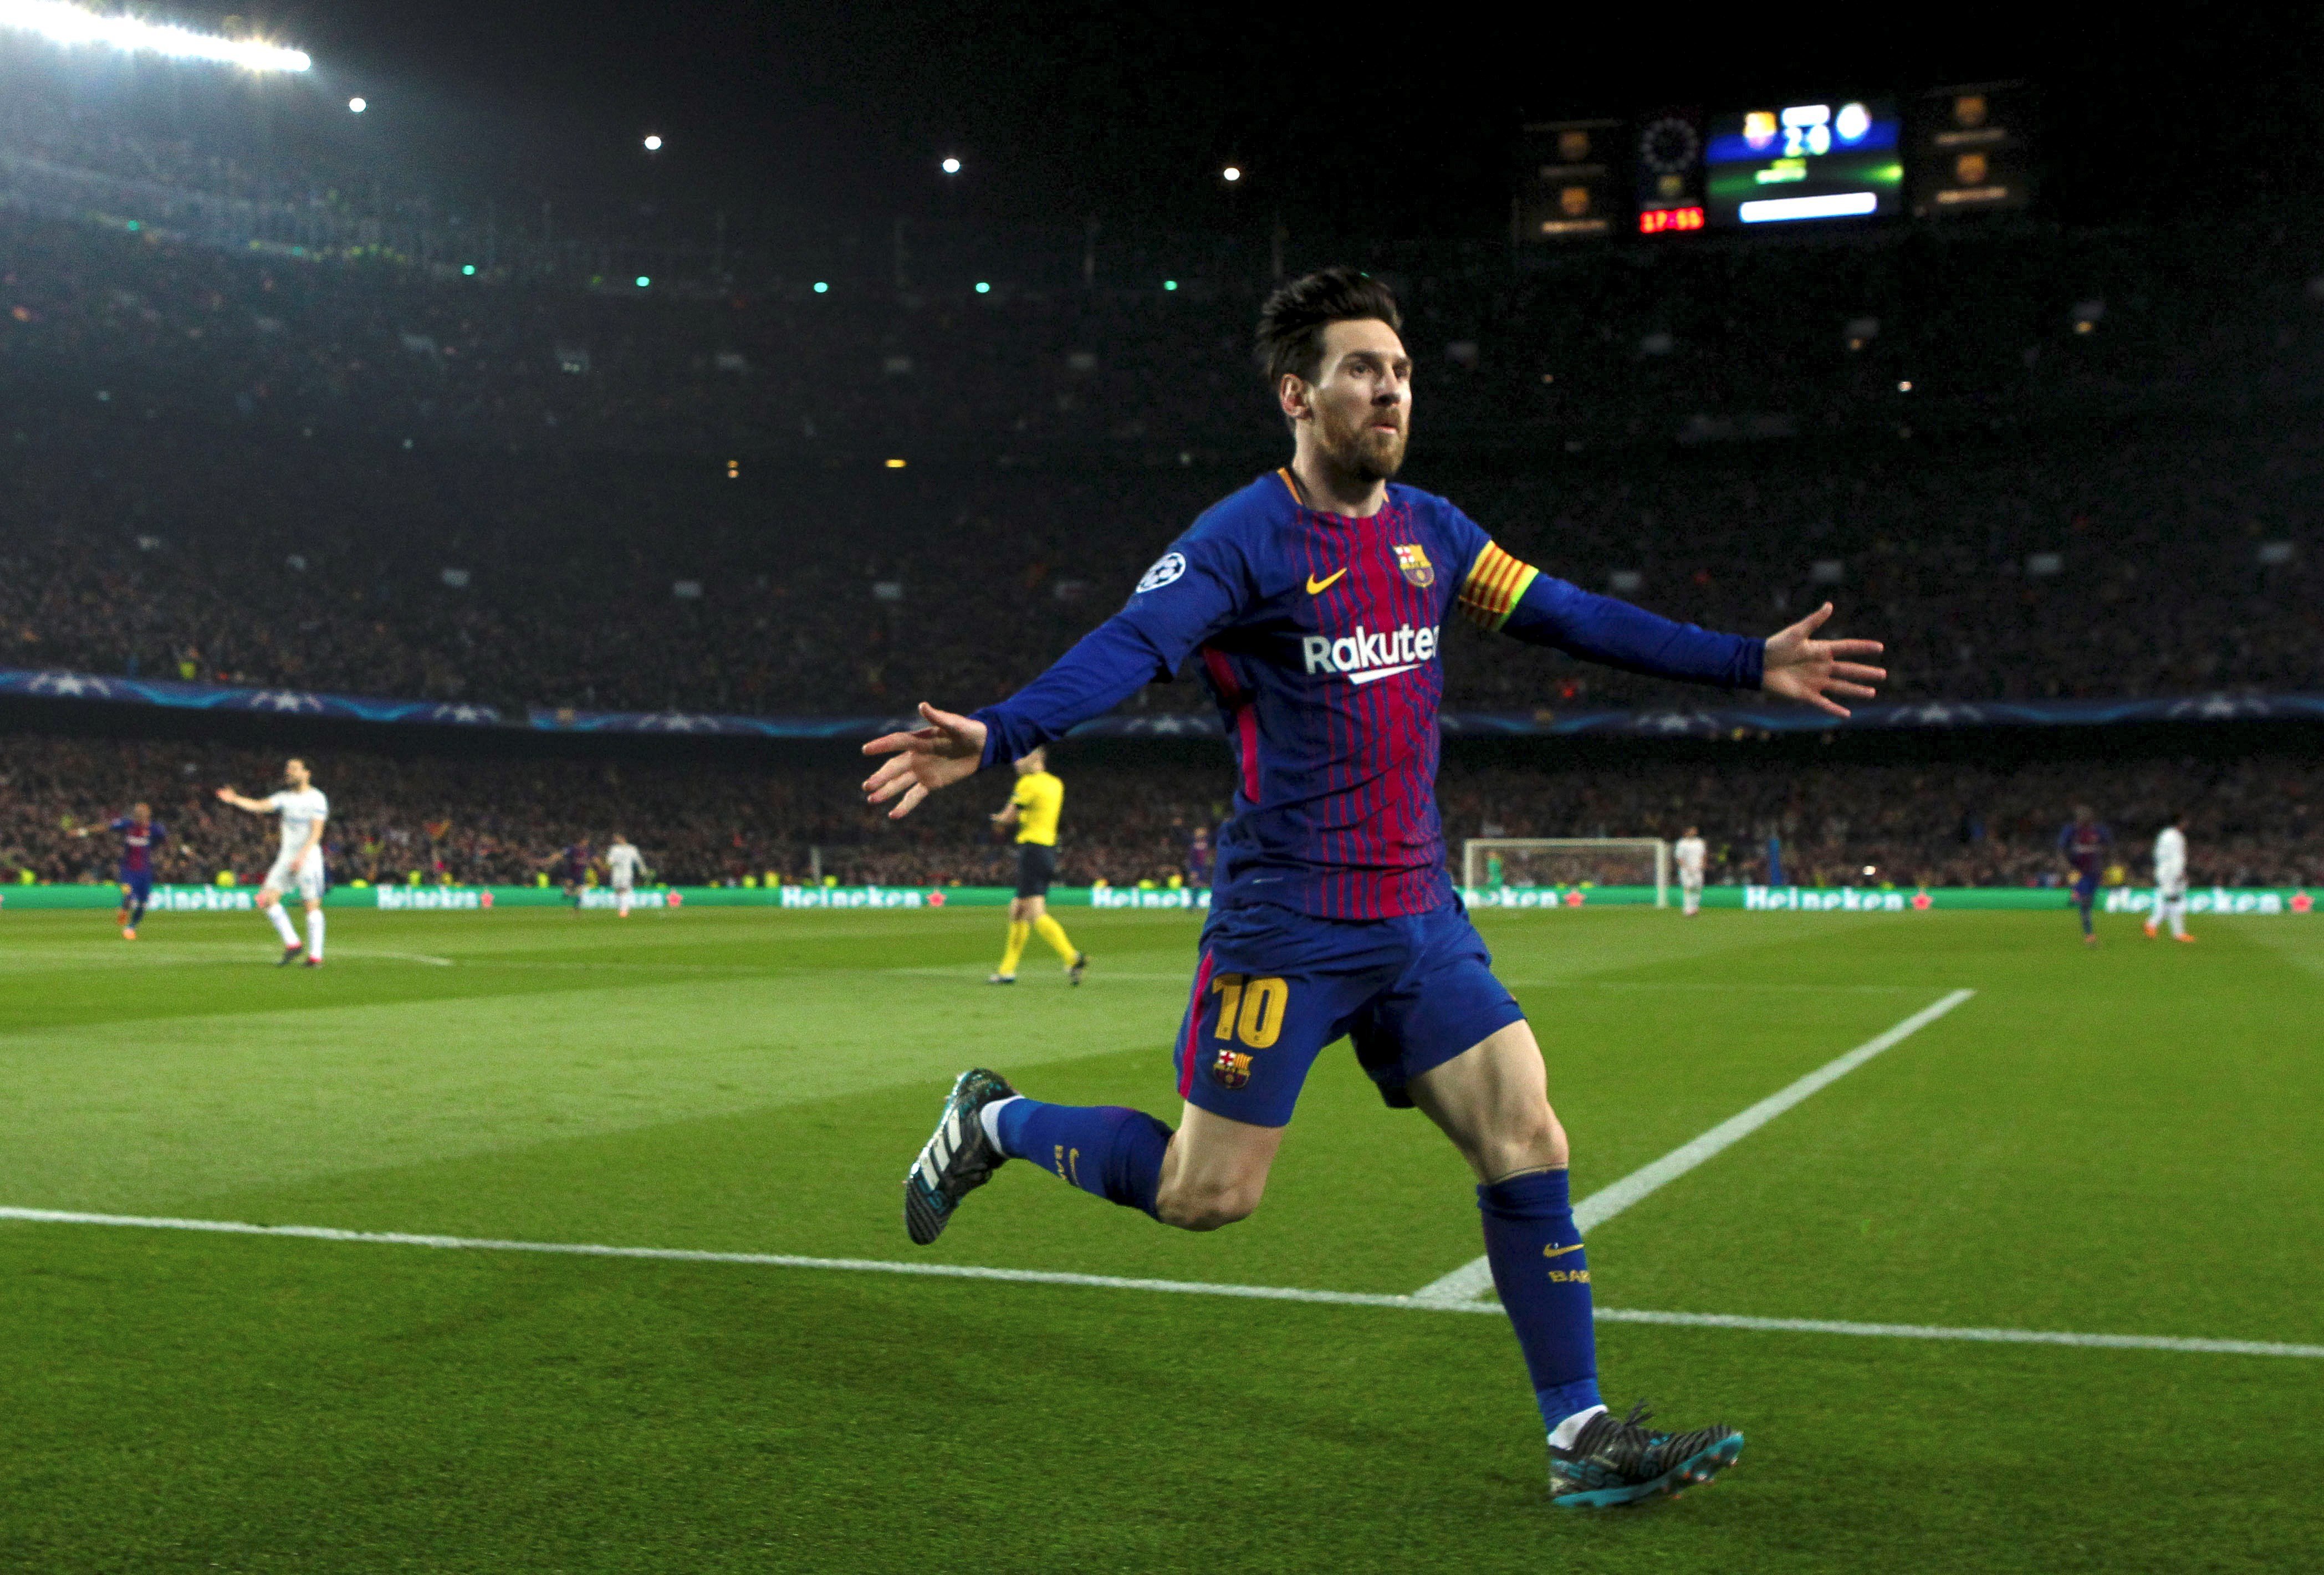 Pistoletazo de salida a la Champions de Messi